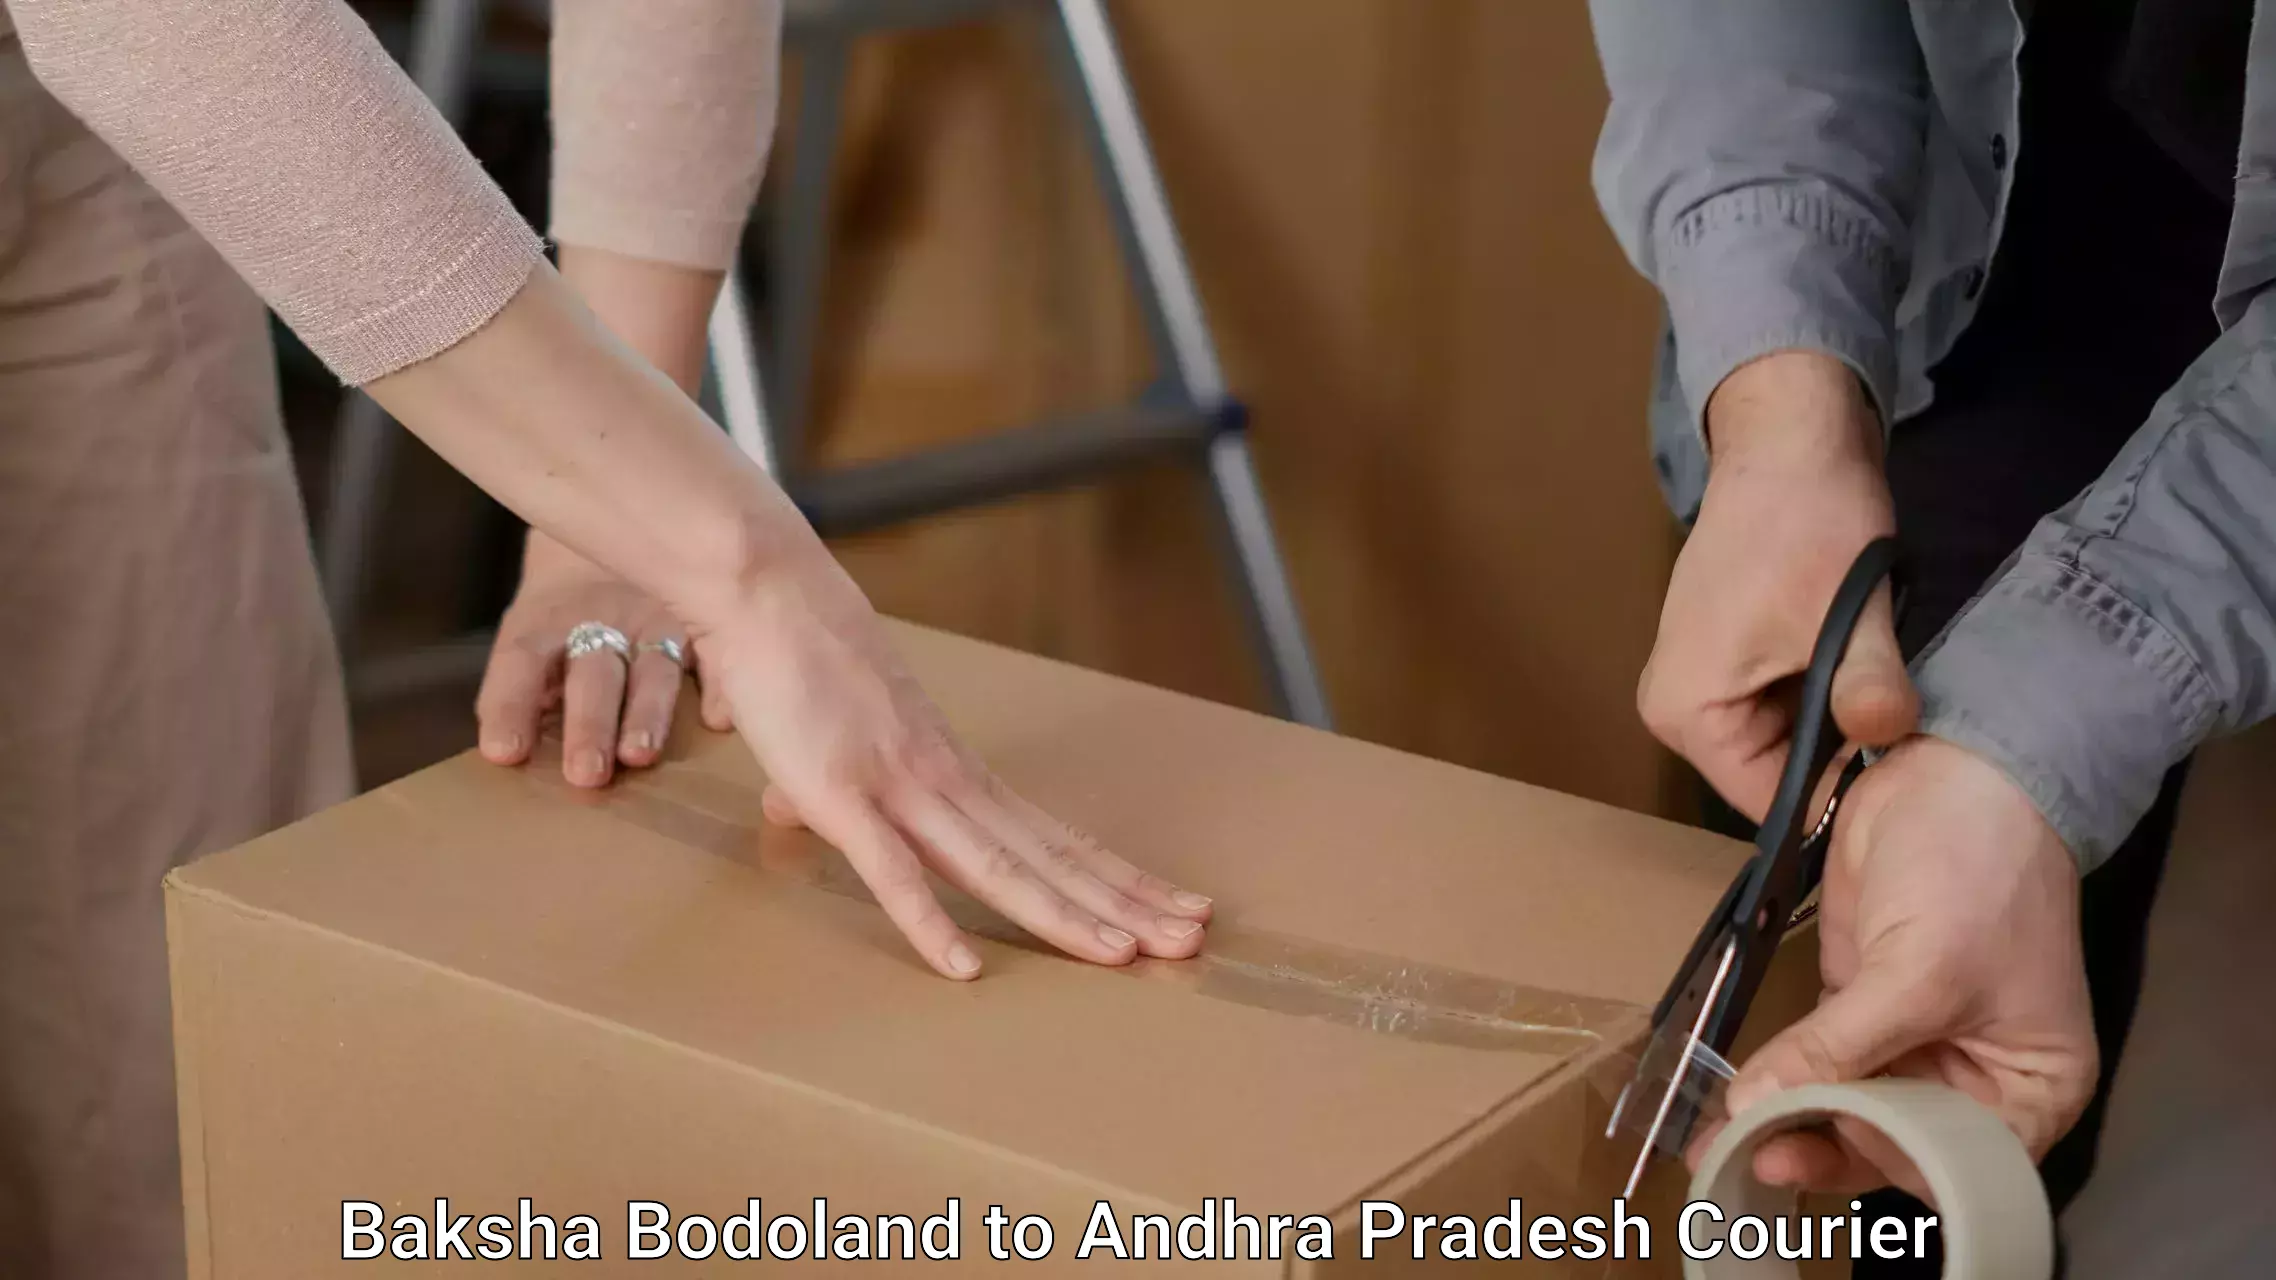 Professional packing and transport Baksha Bodoland to Madakasira